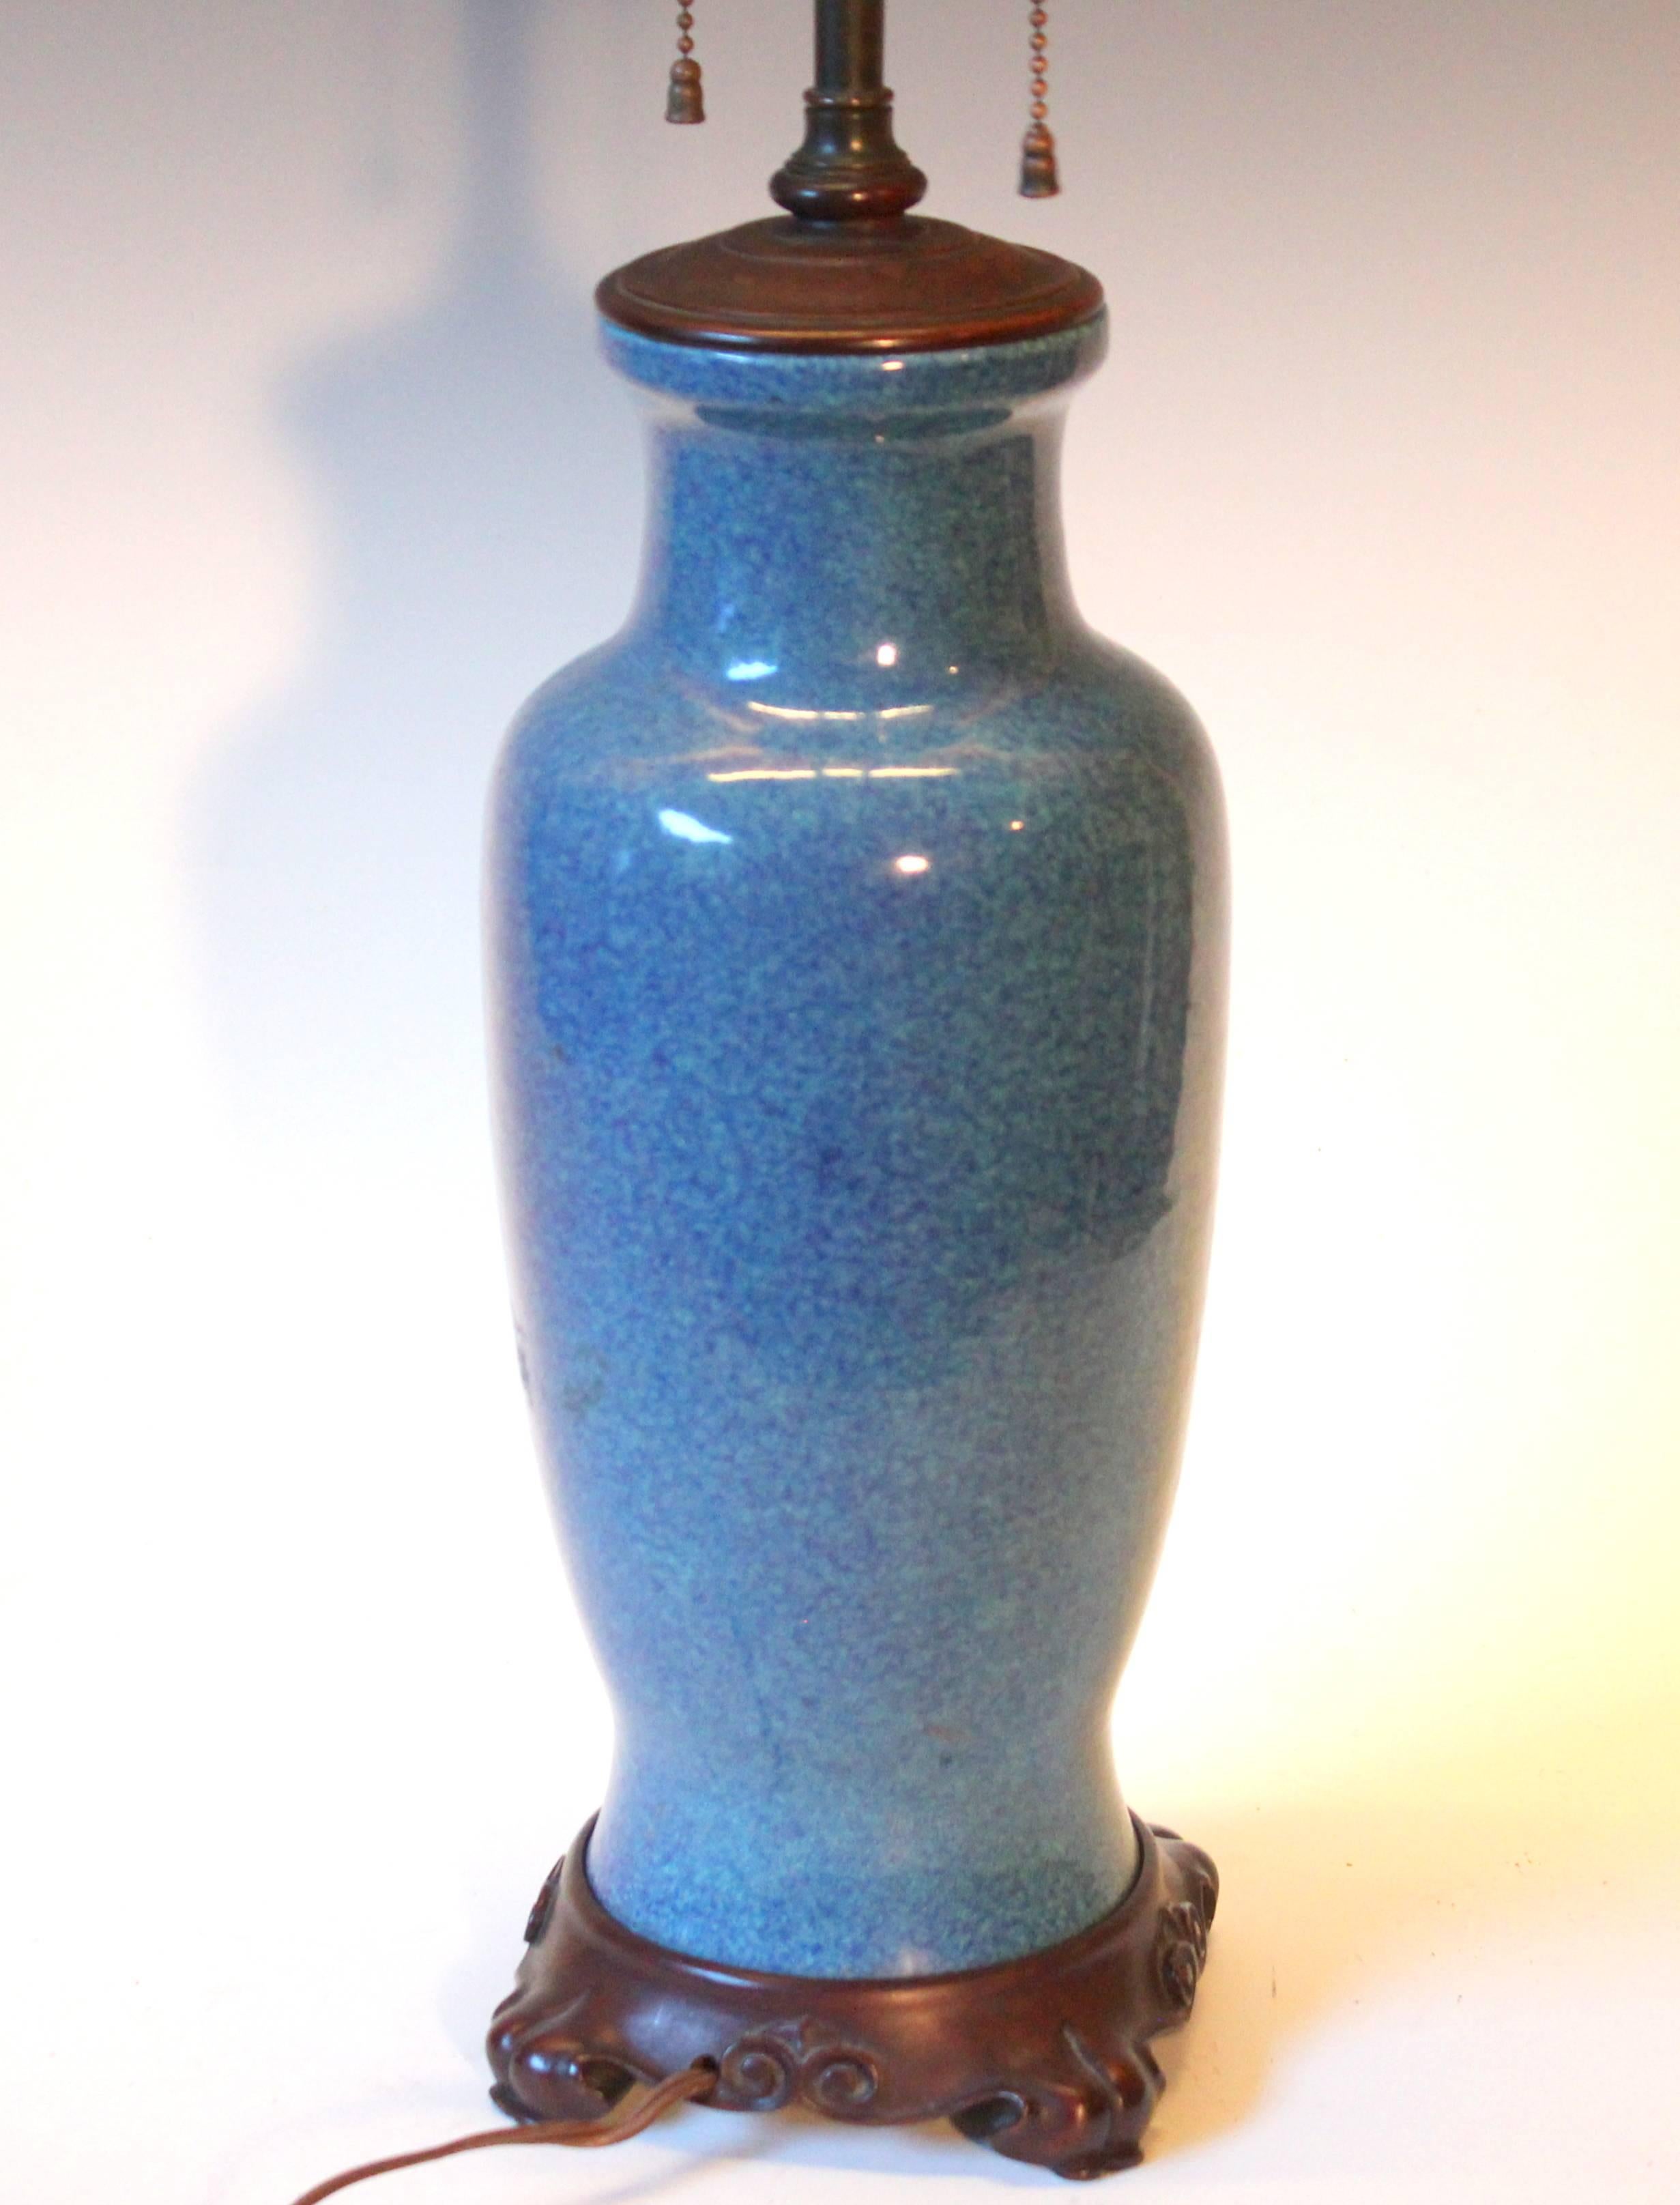 Qing Antique Chinese Porcelain Robin's Egg Blue Vase Lamp Carved Base Bronze Hardware